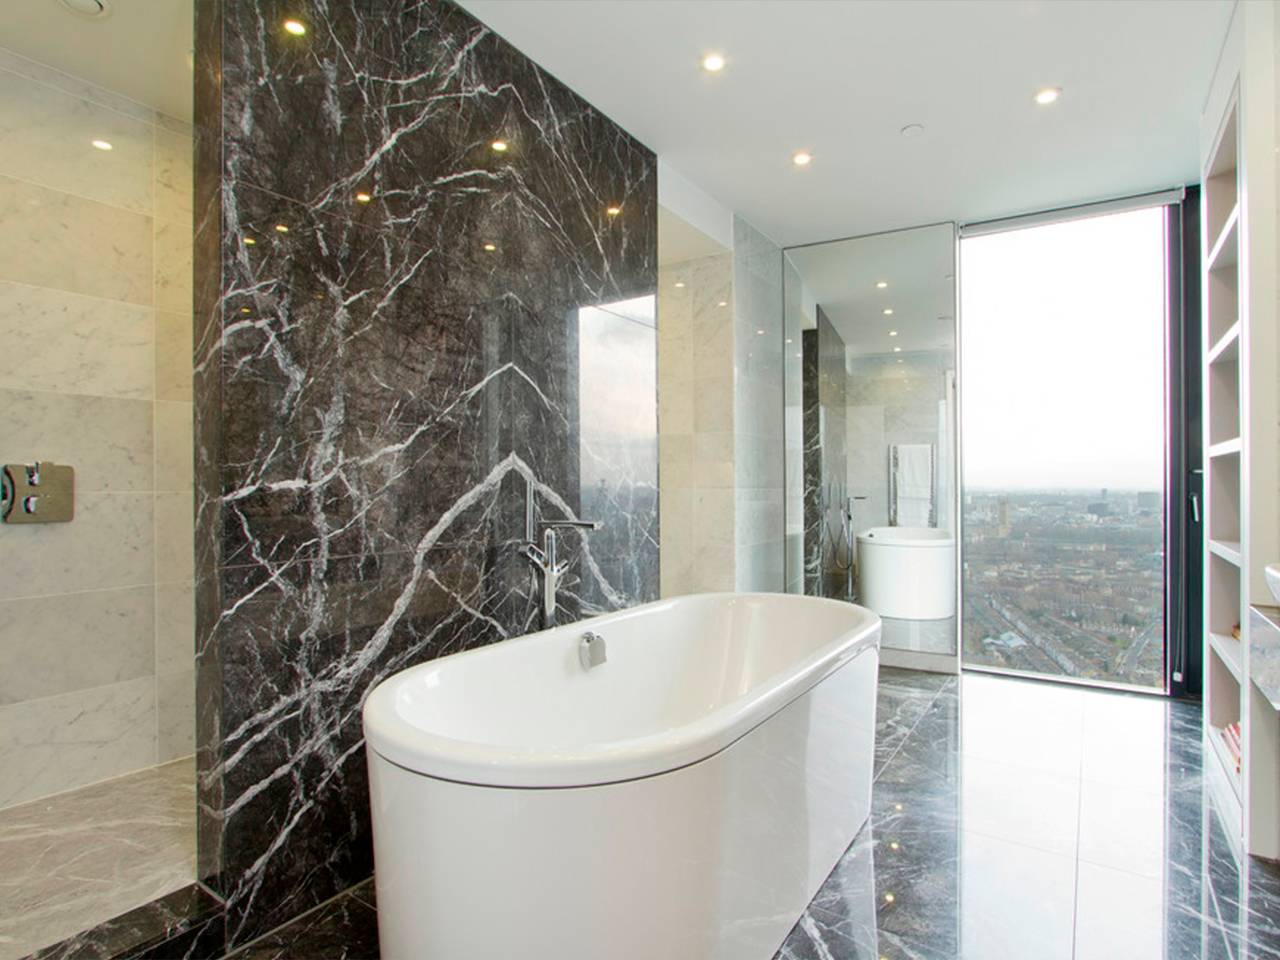 Дизайн ванной комнаты: плитка под мрамор, черная и белая, мозаика